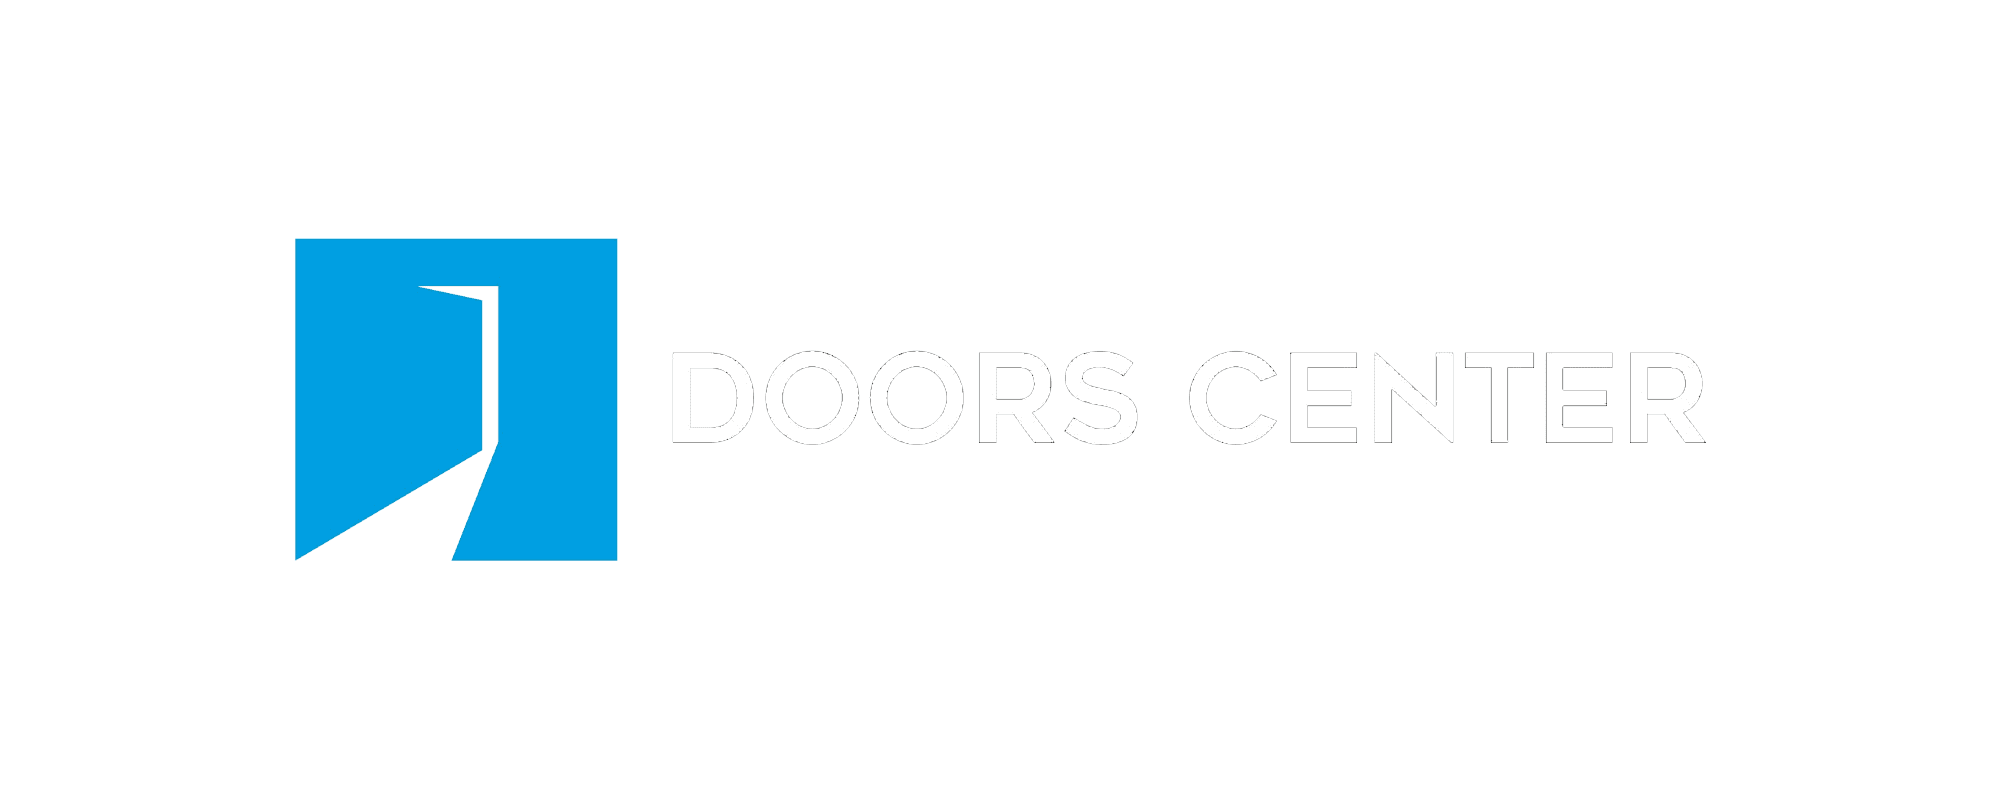 Doors_Center_Transparent_Horizontal_Logo